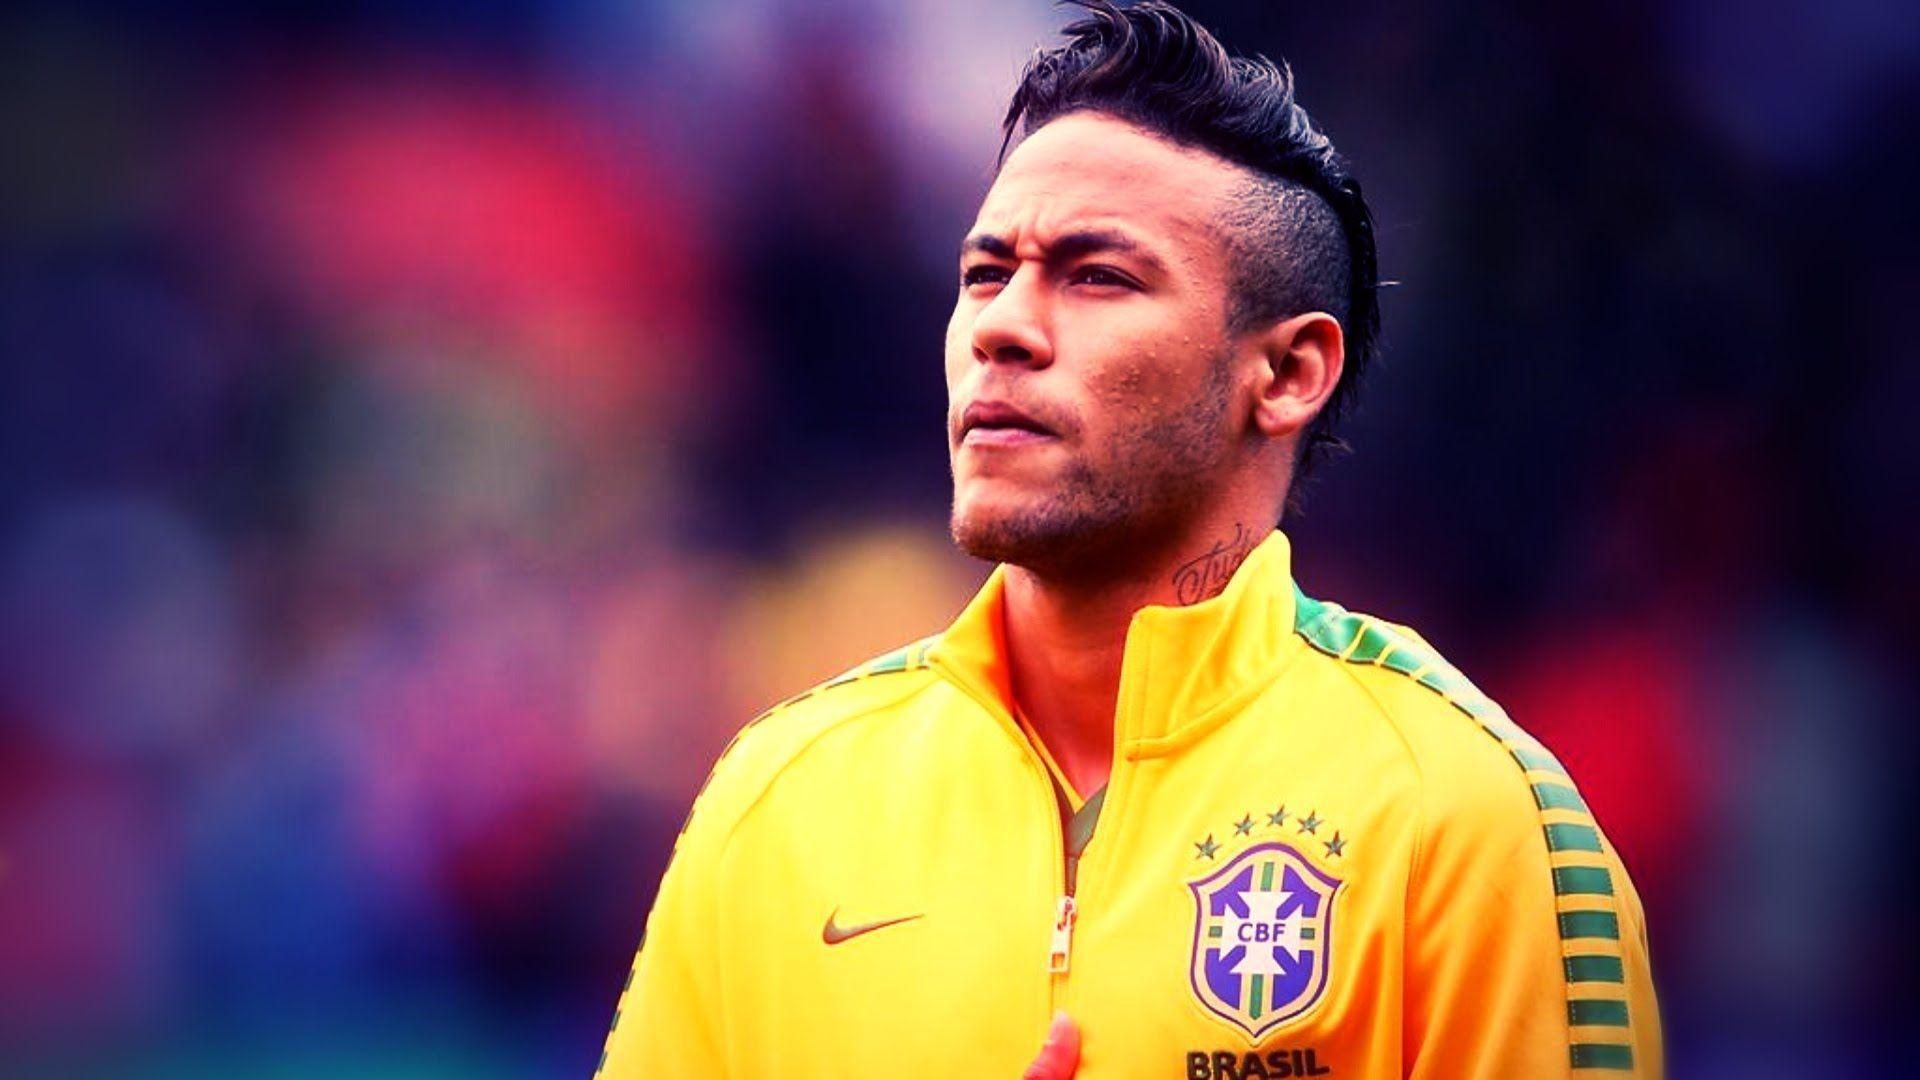 Neymar Wallpapers - Top Free Neymar Backgrounds 